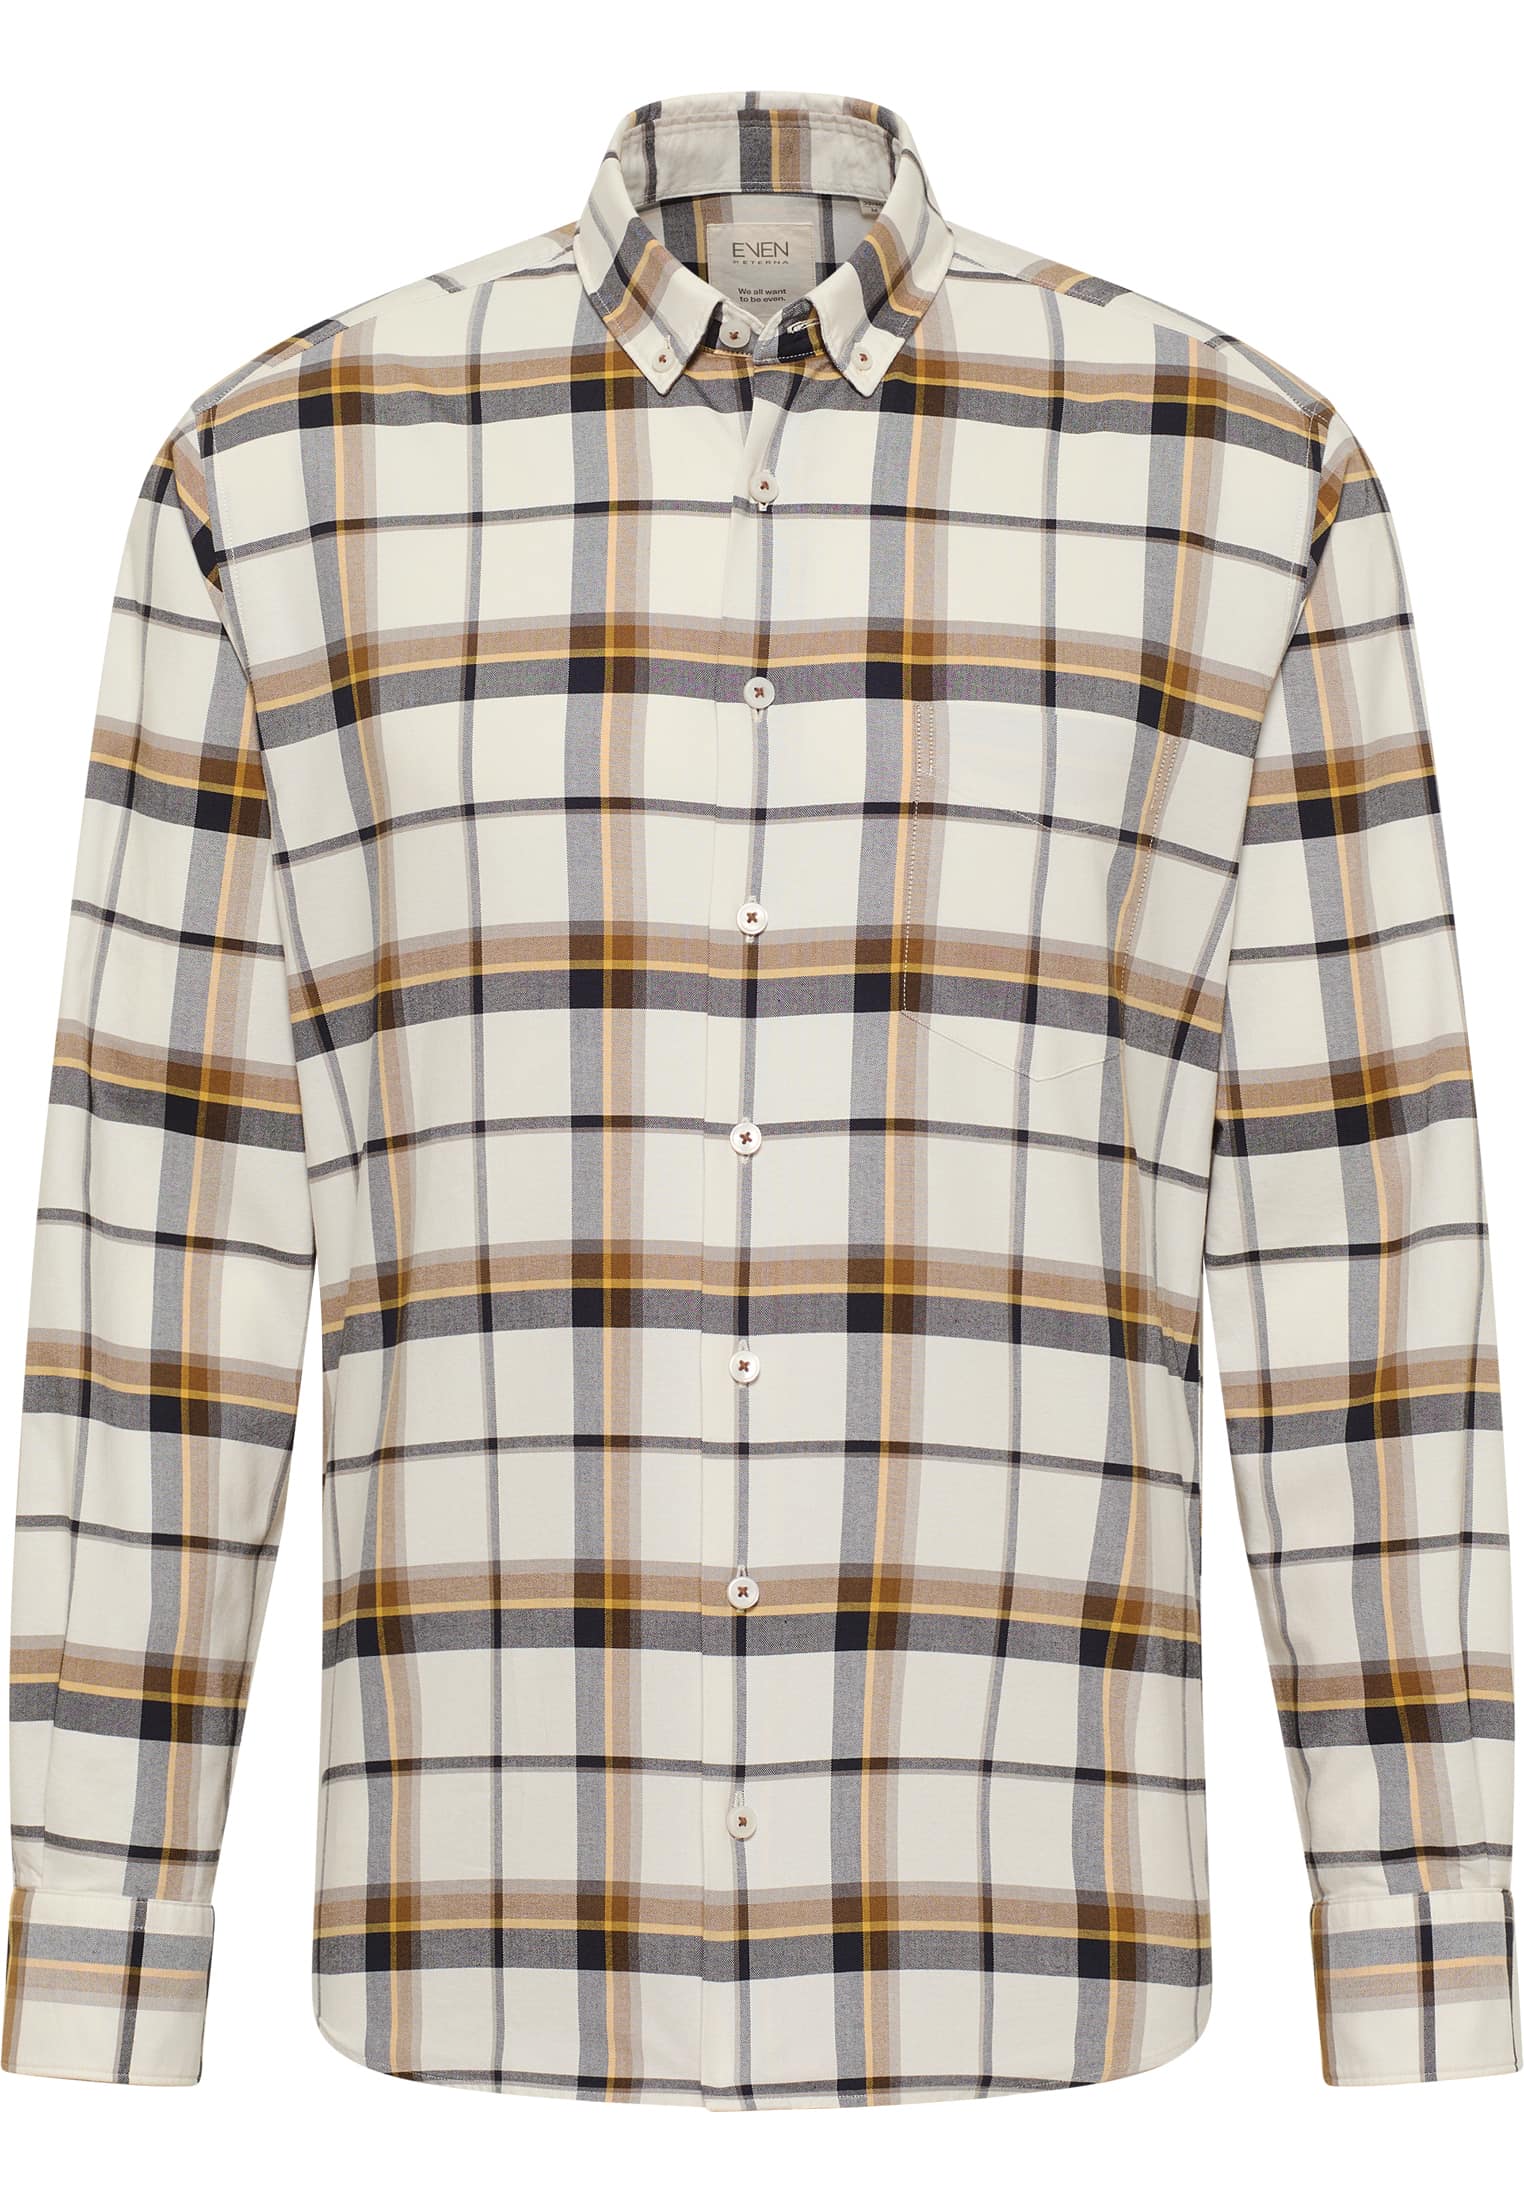 MODERN FIT Shirt in beige checkered | beige | long sleeve | XL |  1SH11420-02-01-XL-1/1 | 